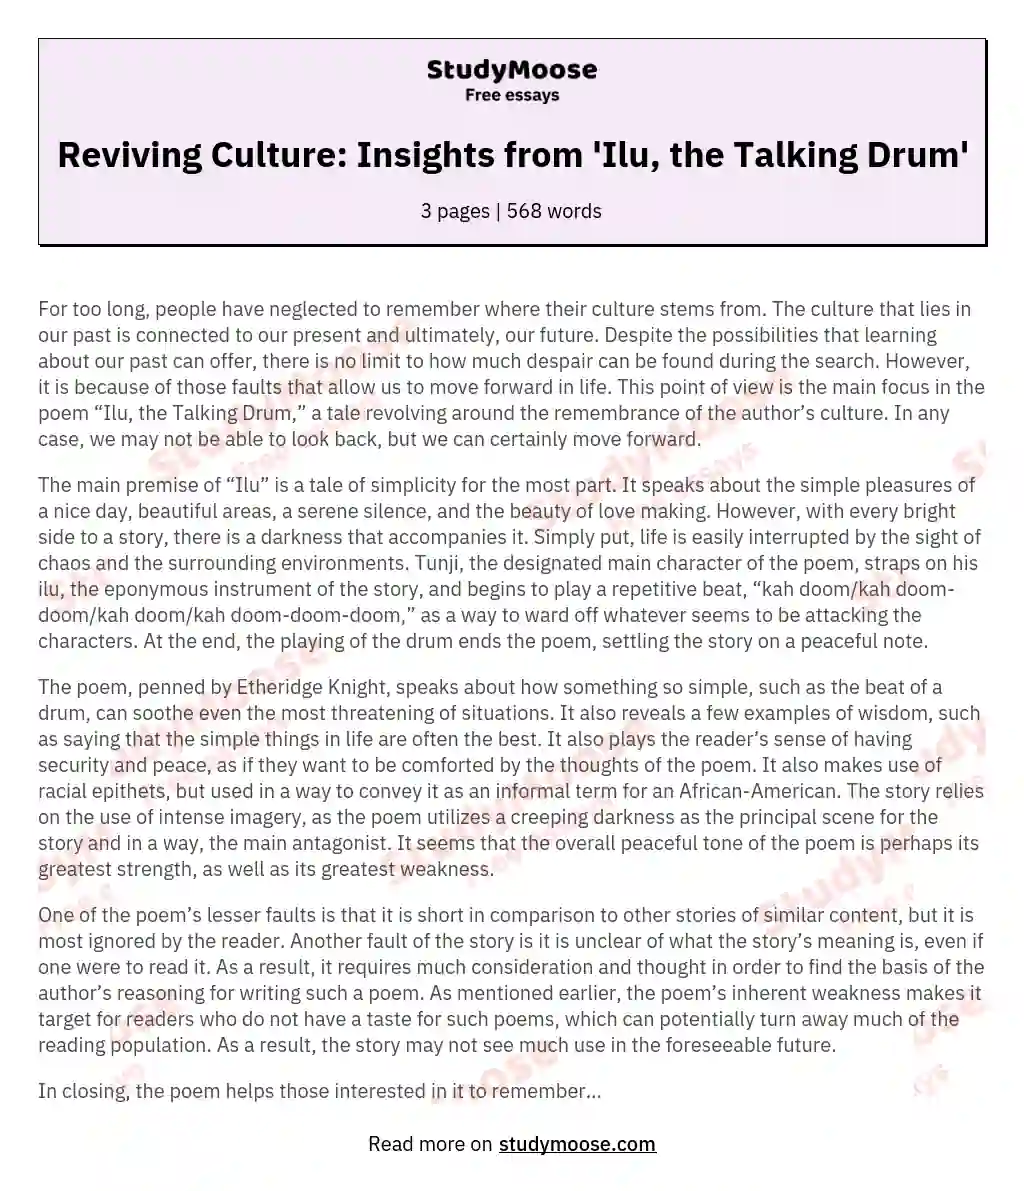 Ilu, the Talking Drum